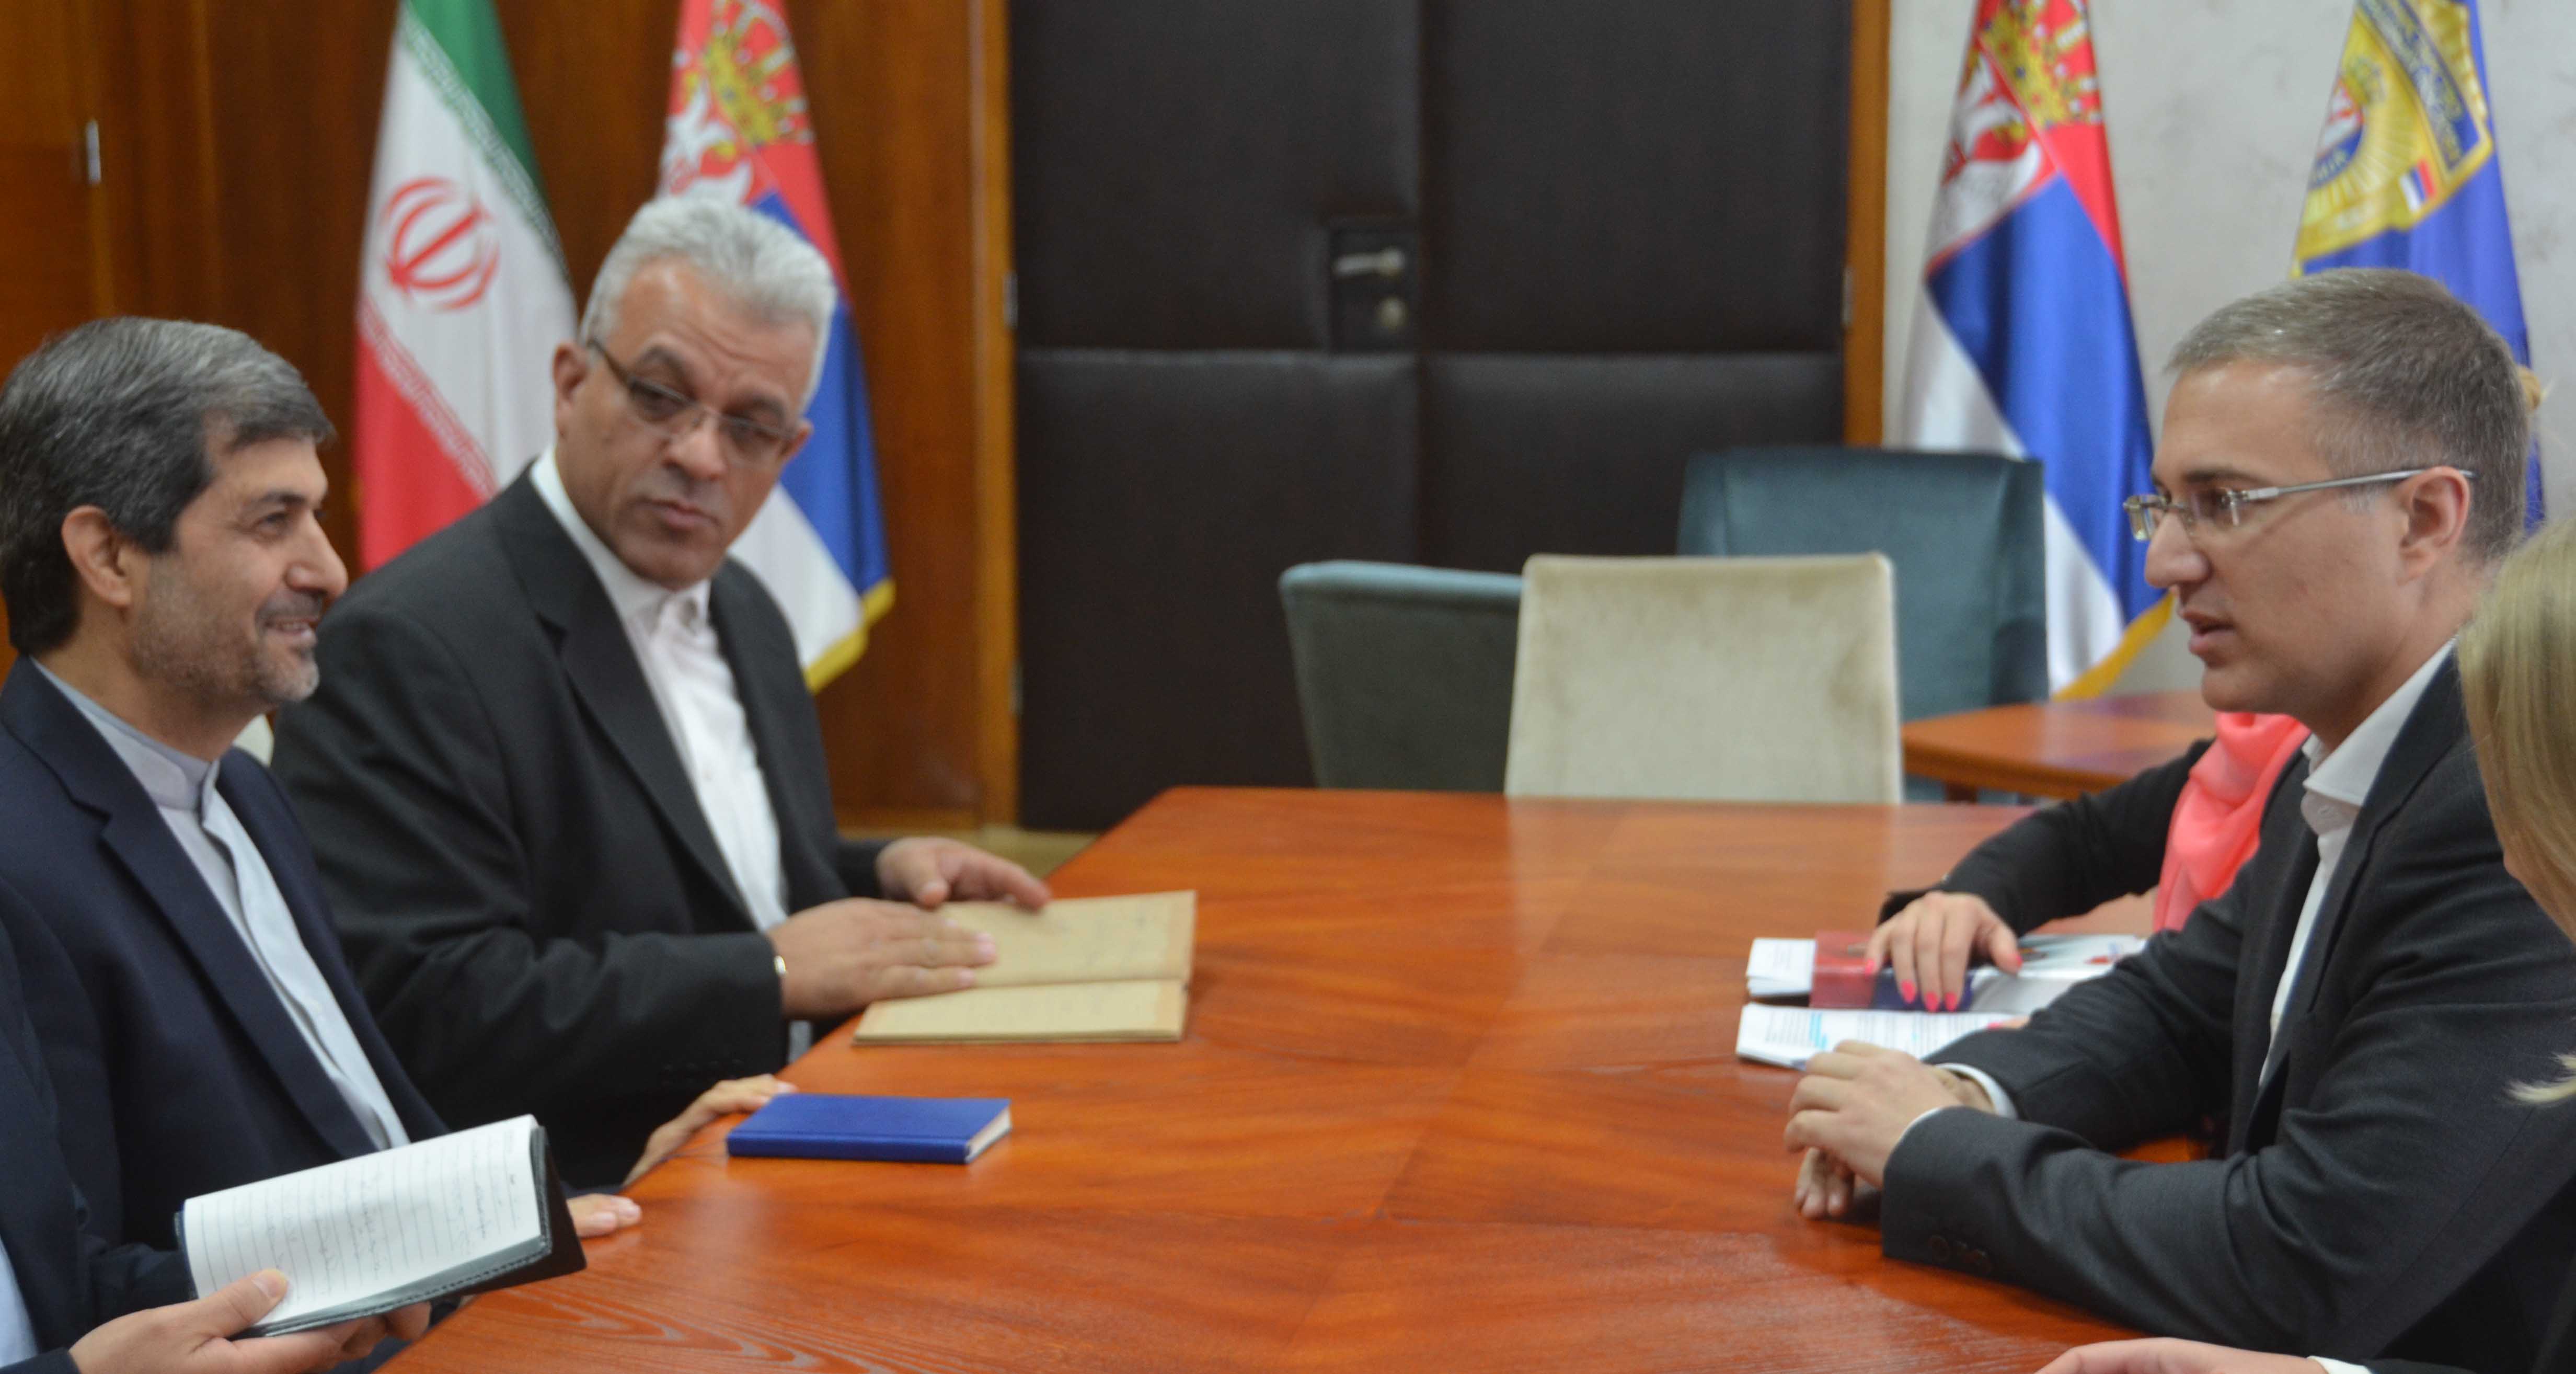 Похвале Влади Србије и МУП-у на очувању стабилности и безбедности у региону